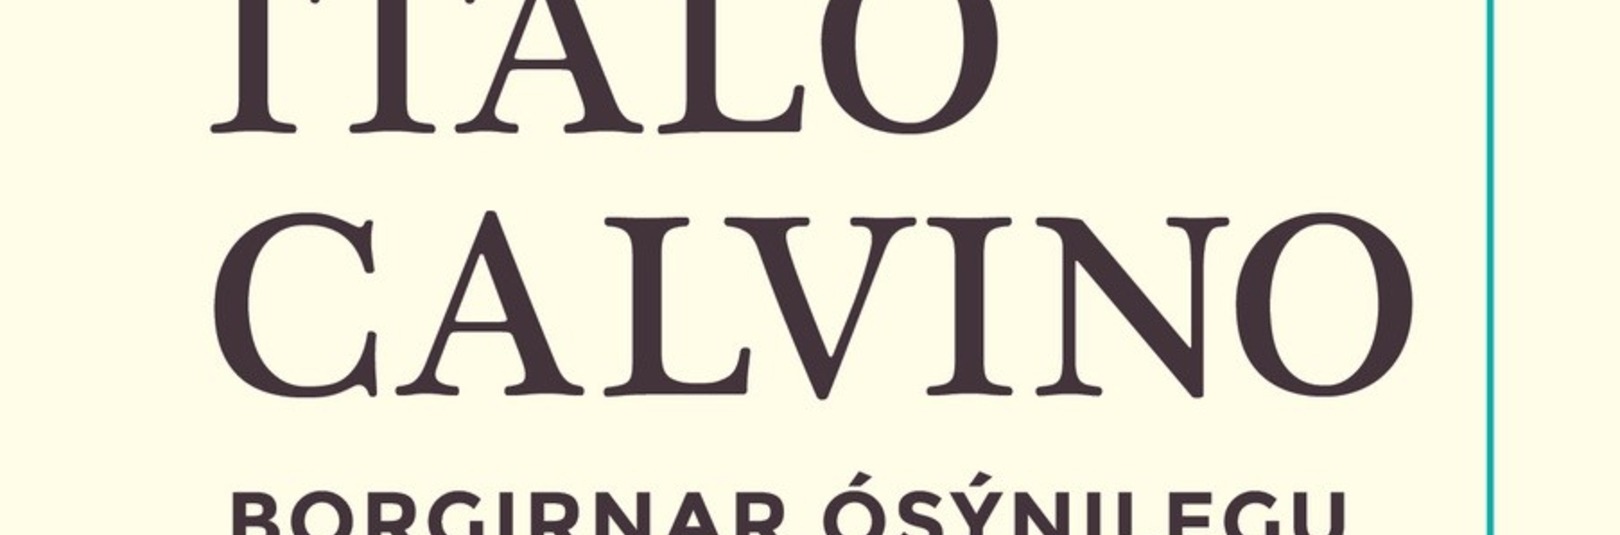 Calvino 100 ára og Borgirnar ósýnilegu - á vefsíðu Háskóla Íslands